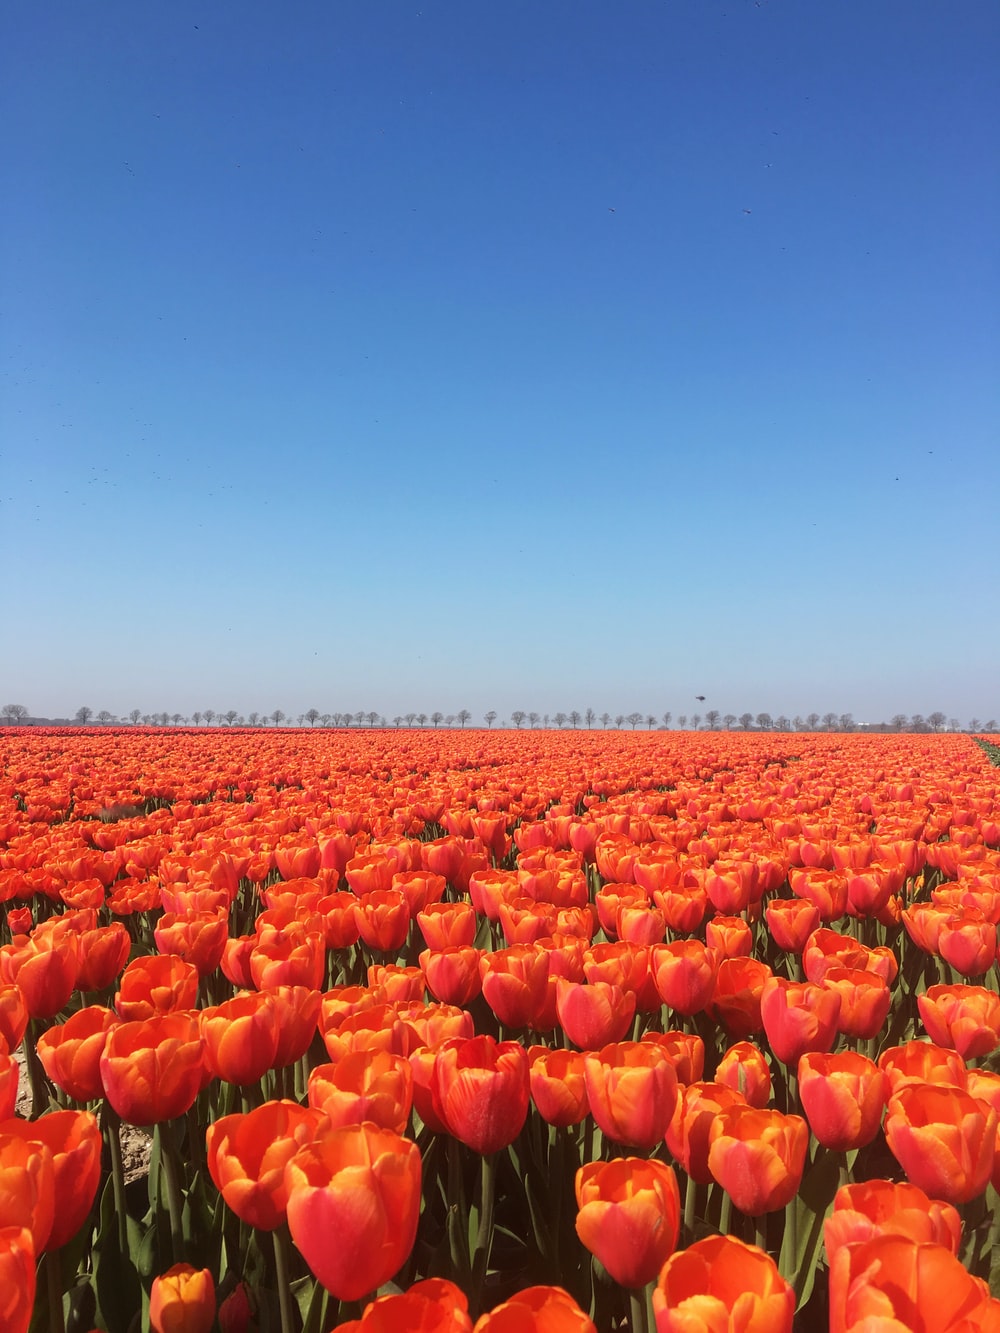 Hình ảnh, ý nghĩa hoa Tulip đẹp tinh tế, bình yên